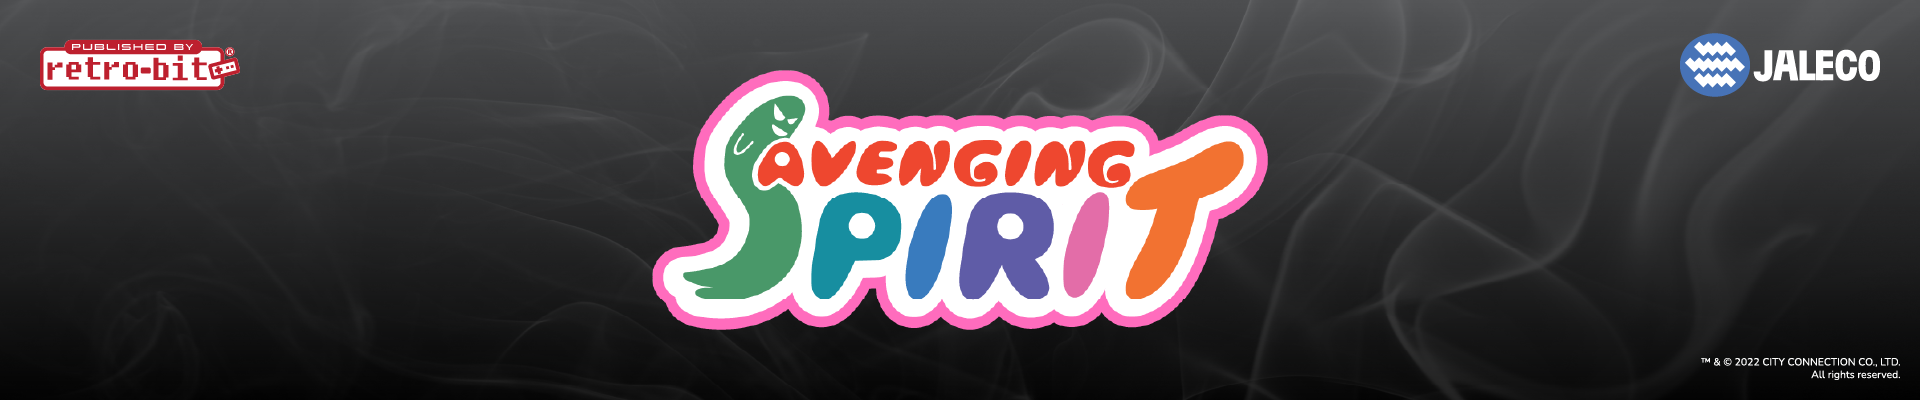 Avenging Spirit - RBP Header